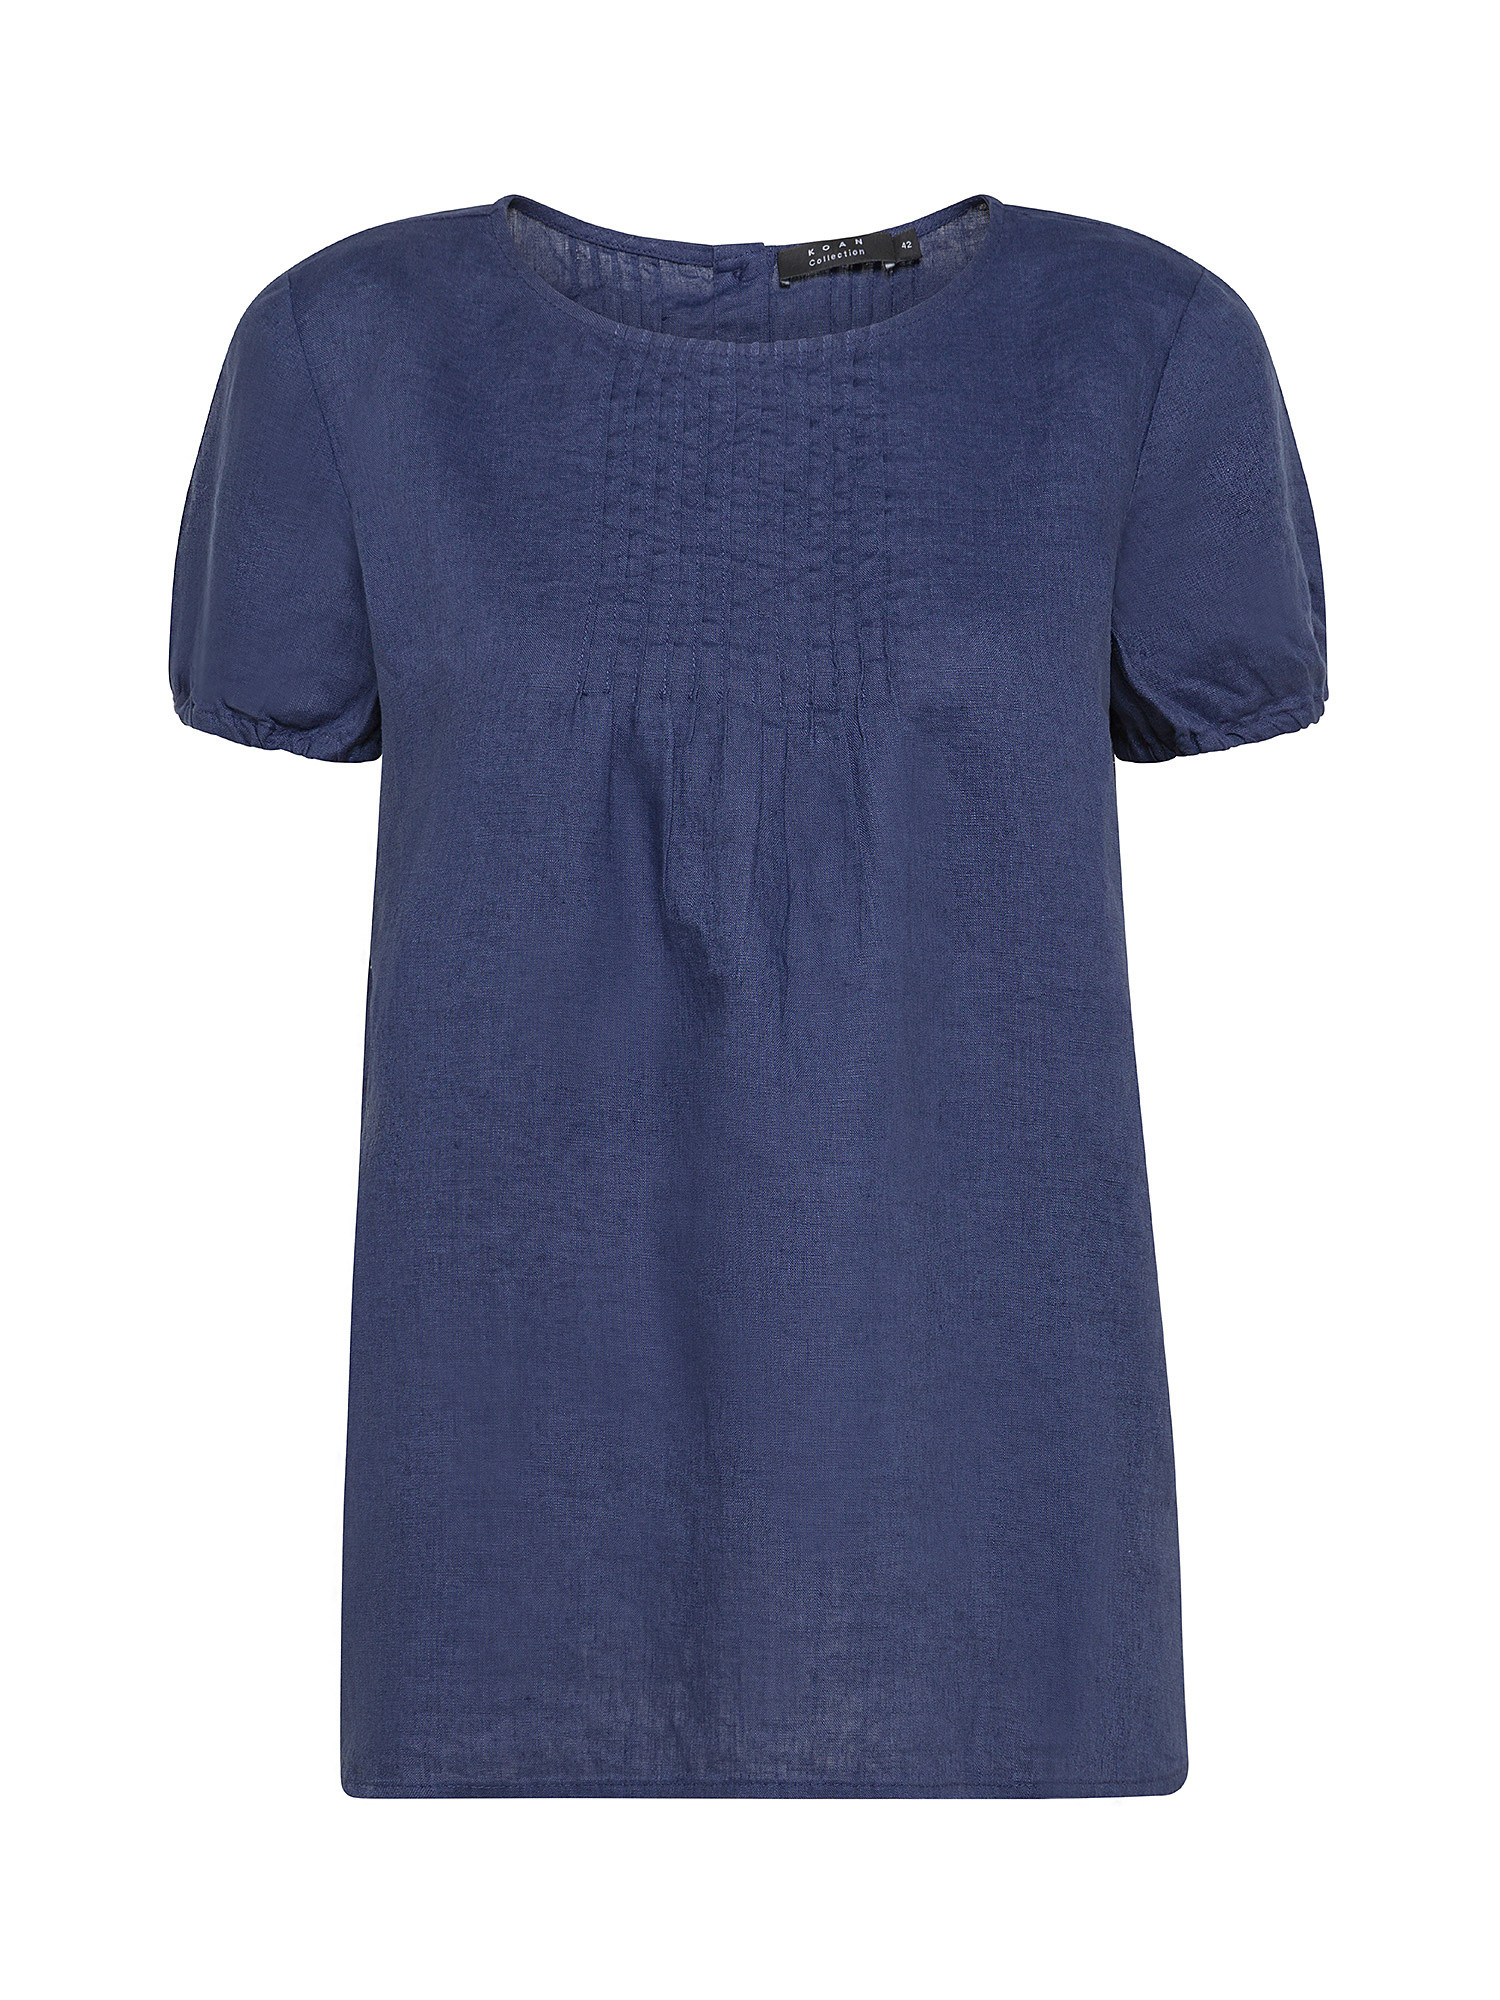 Koan - Linen blouse, Blue, large image number 0